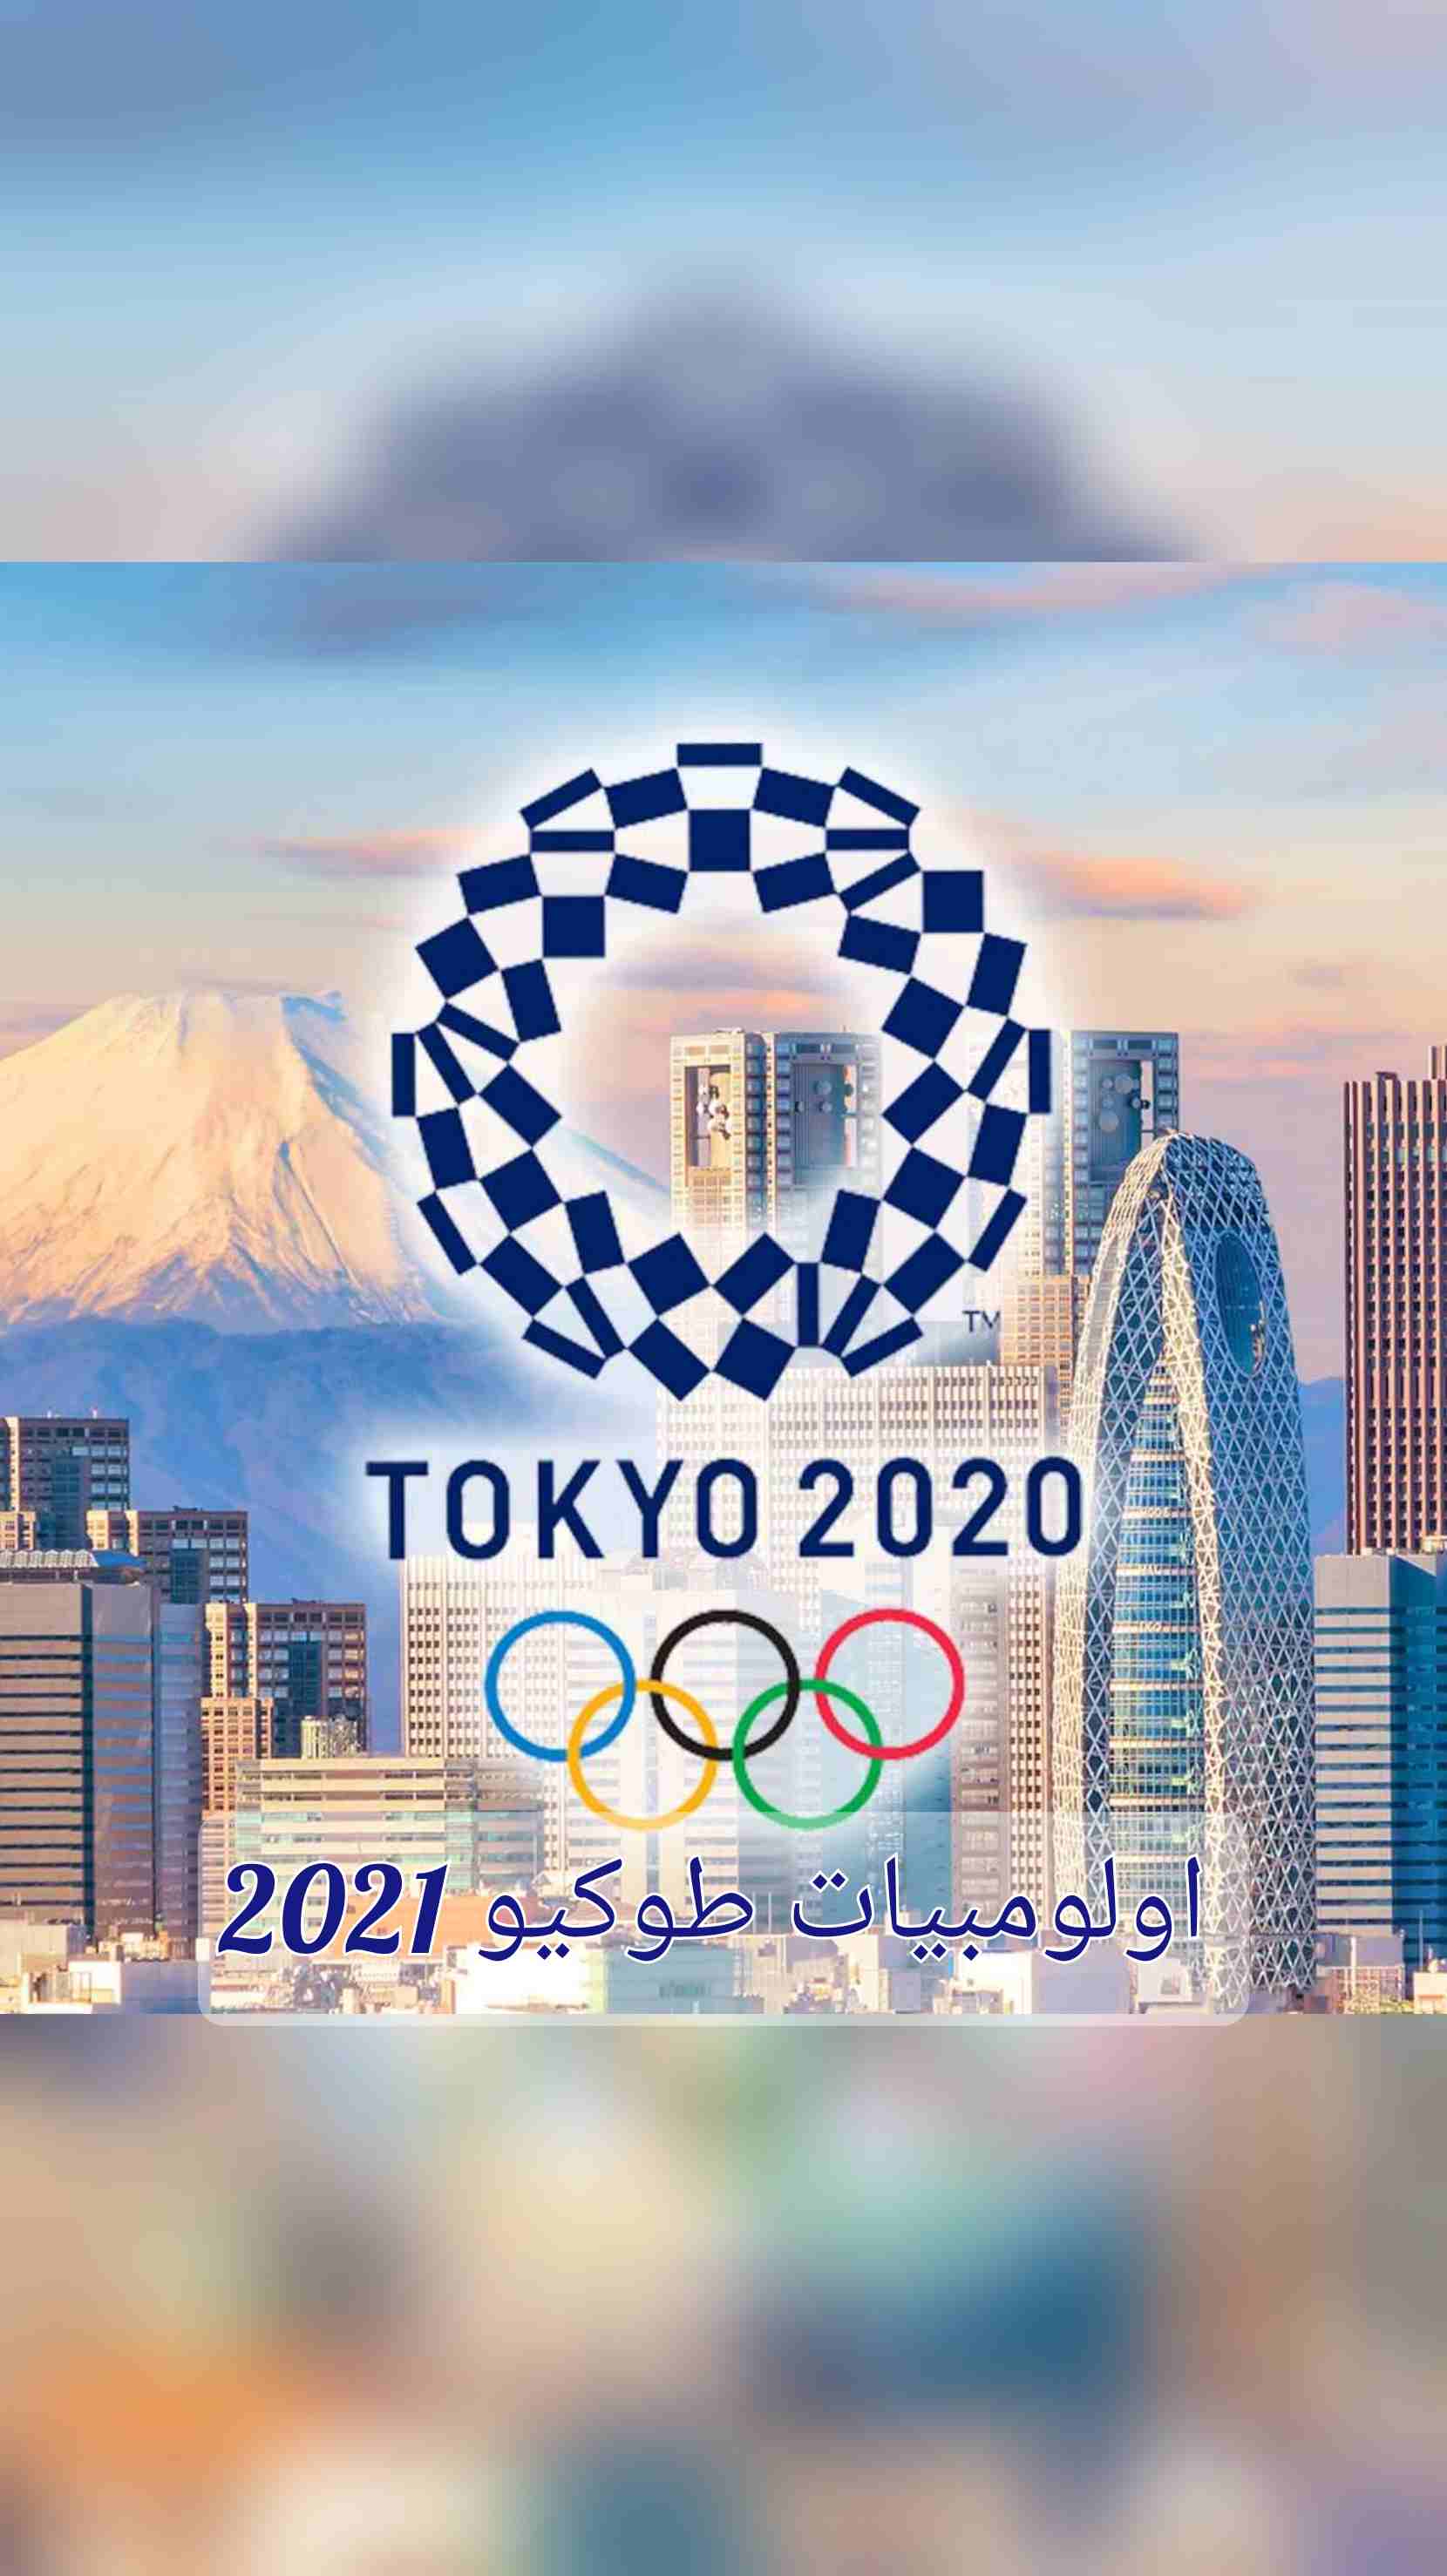 اولومبيات طوكيو2021 والتذكارات الأولمبية الجميلة والرائعة